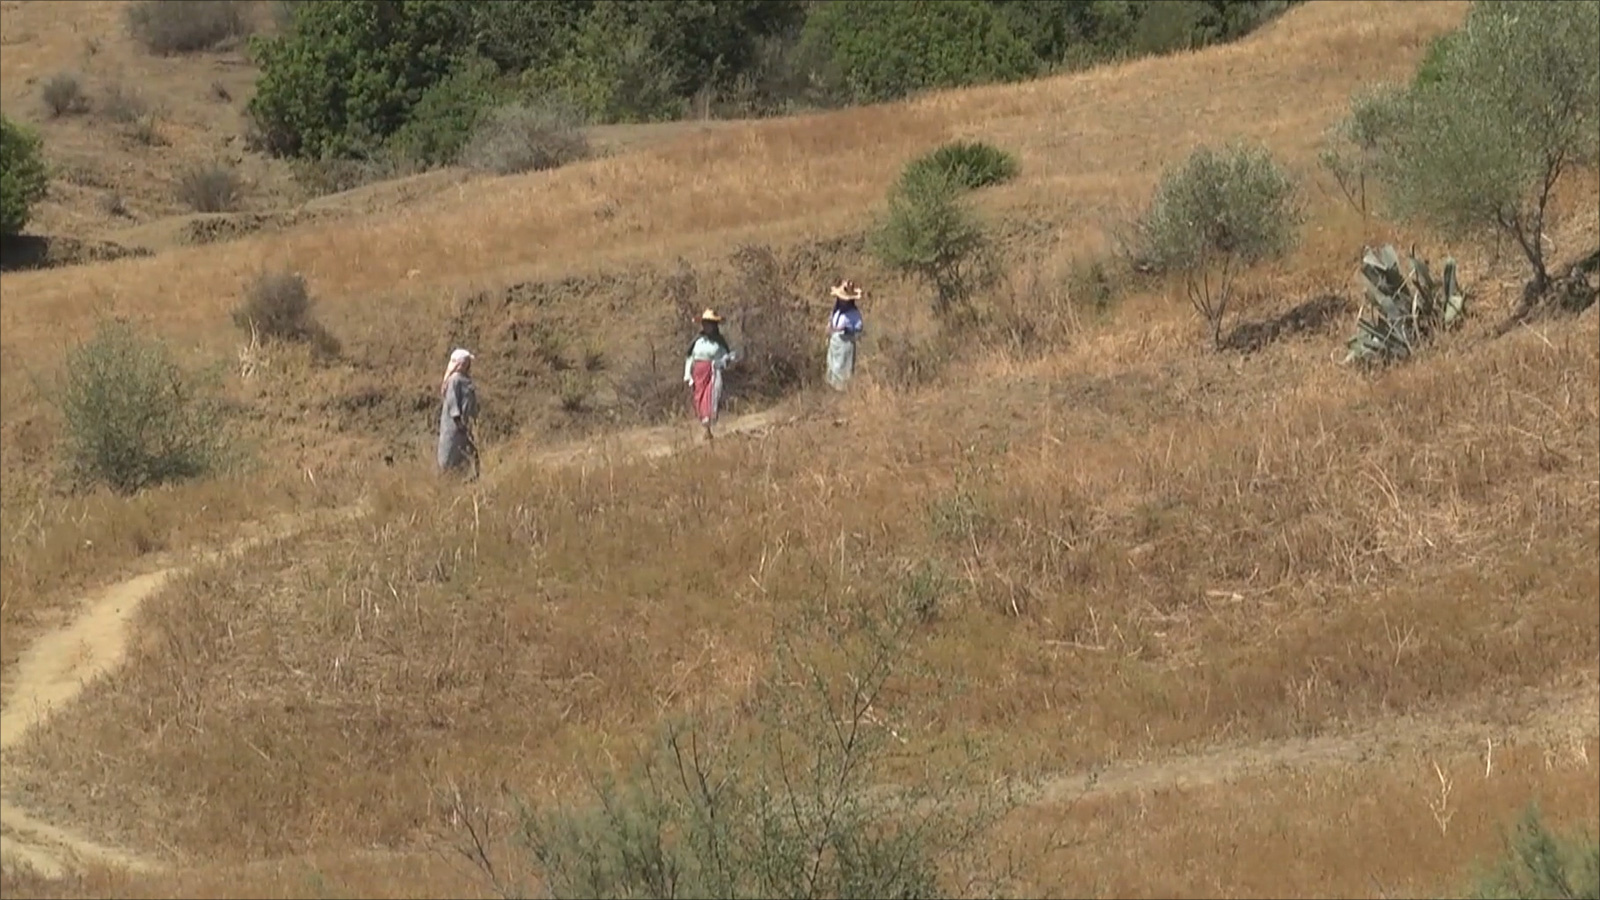 نساء قرية ريكشة يقطعن رحلة جبلية شاقة سيرا على الأقدام للوصول للبئر (الأناضول)